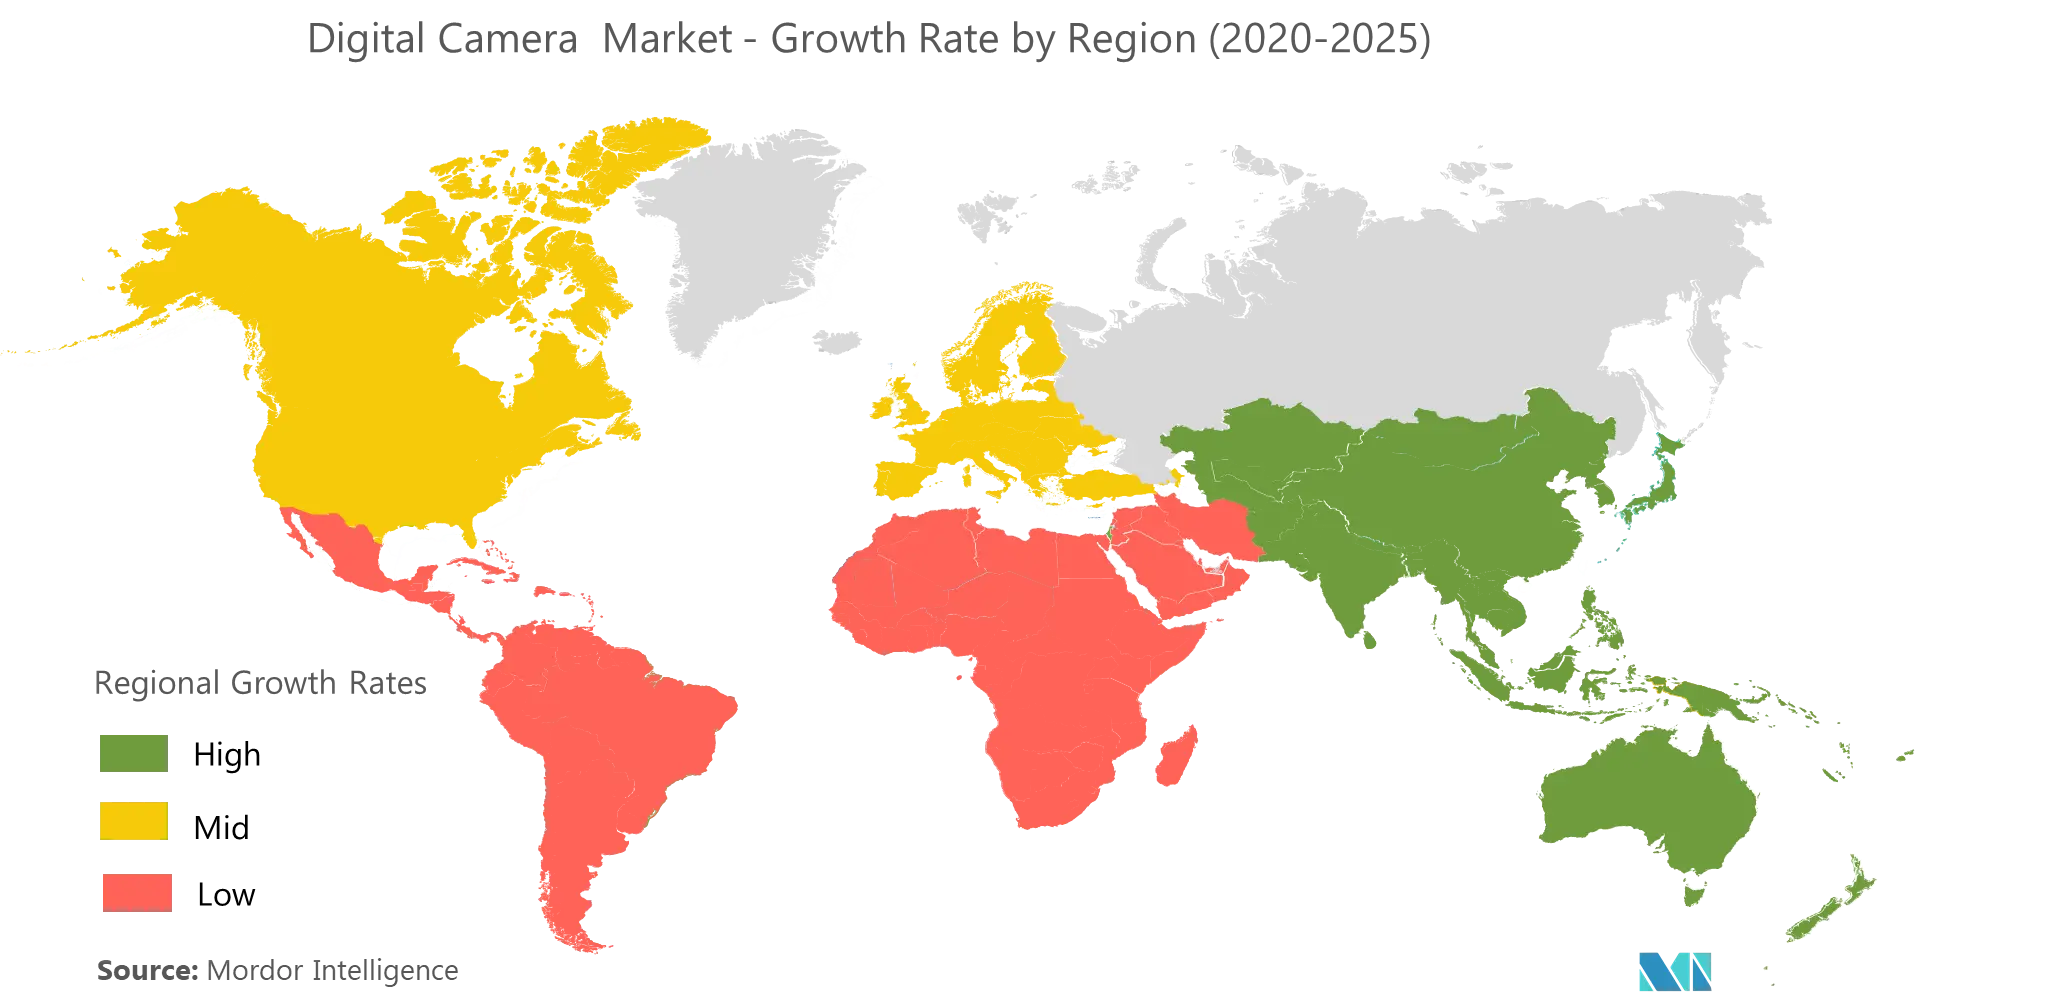 Digital Camera Market Growth by Region